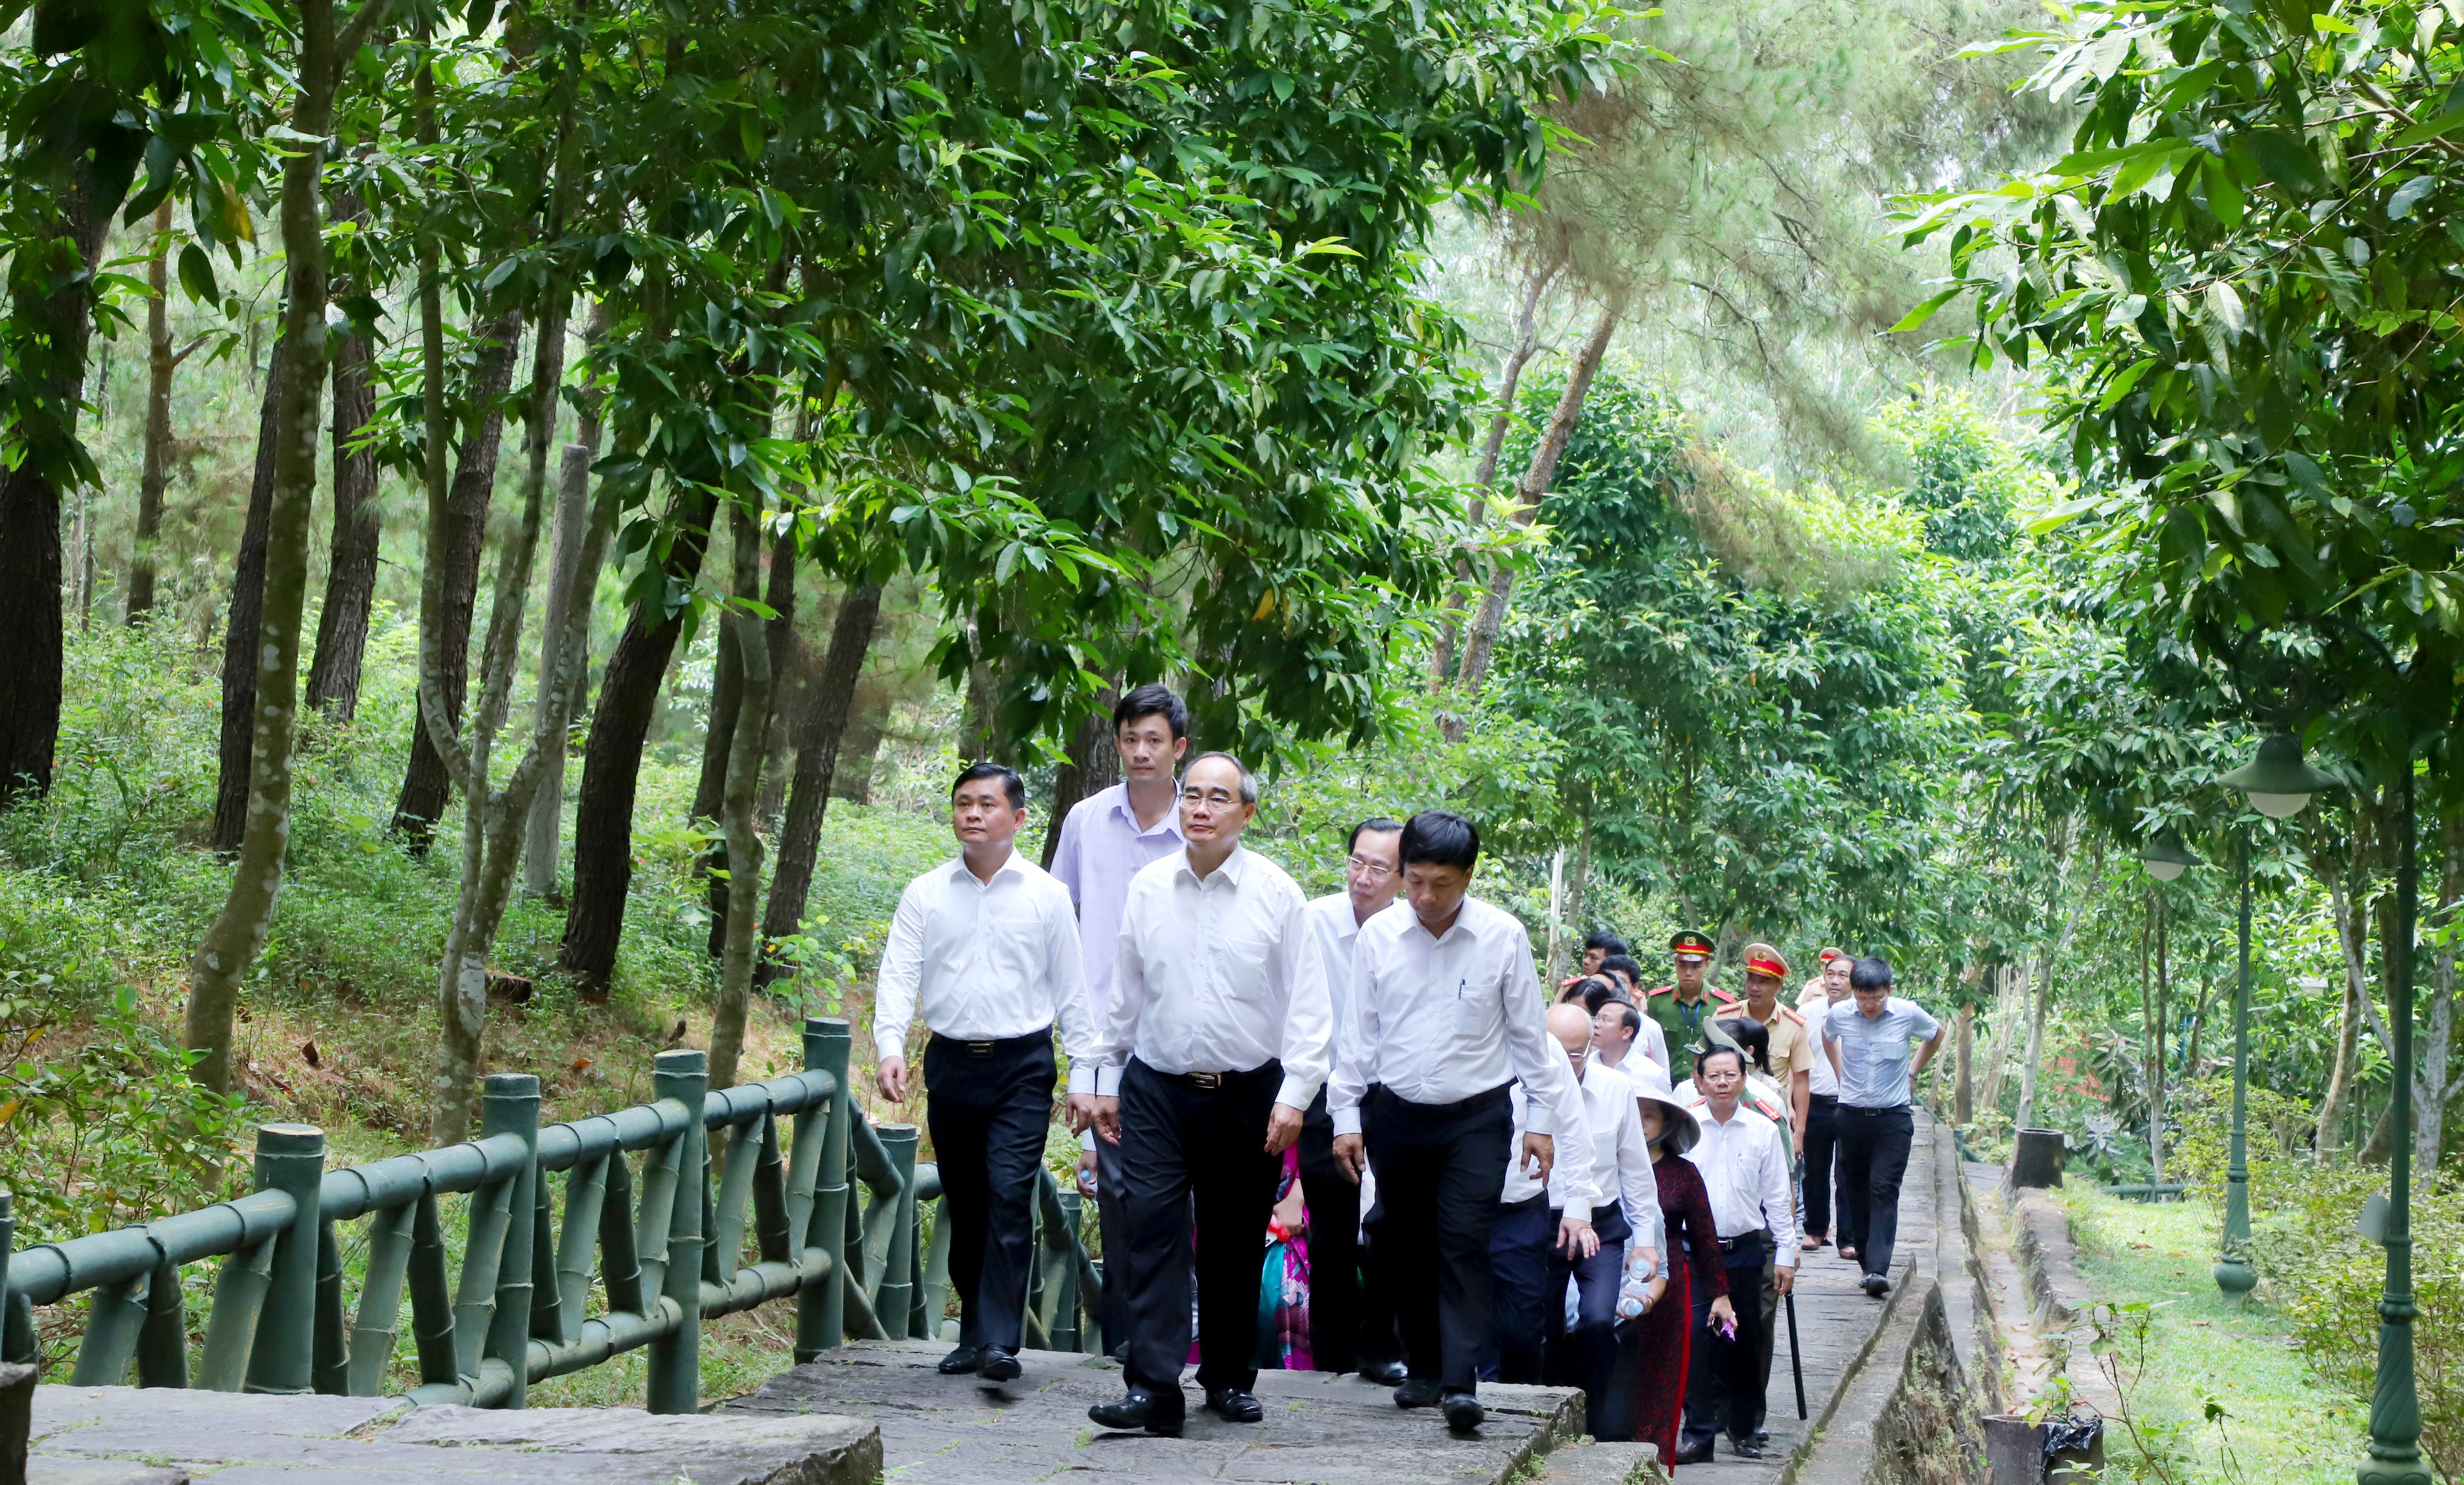 Đồng chí Nguyễn Thiện Nhân cùng đoàn đến dâng hoa, dâng hương cho thân nhân Chủ tịch Hồ Chí Minh tại núi Động Tranh. Ảnh: Thành Duy